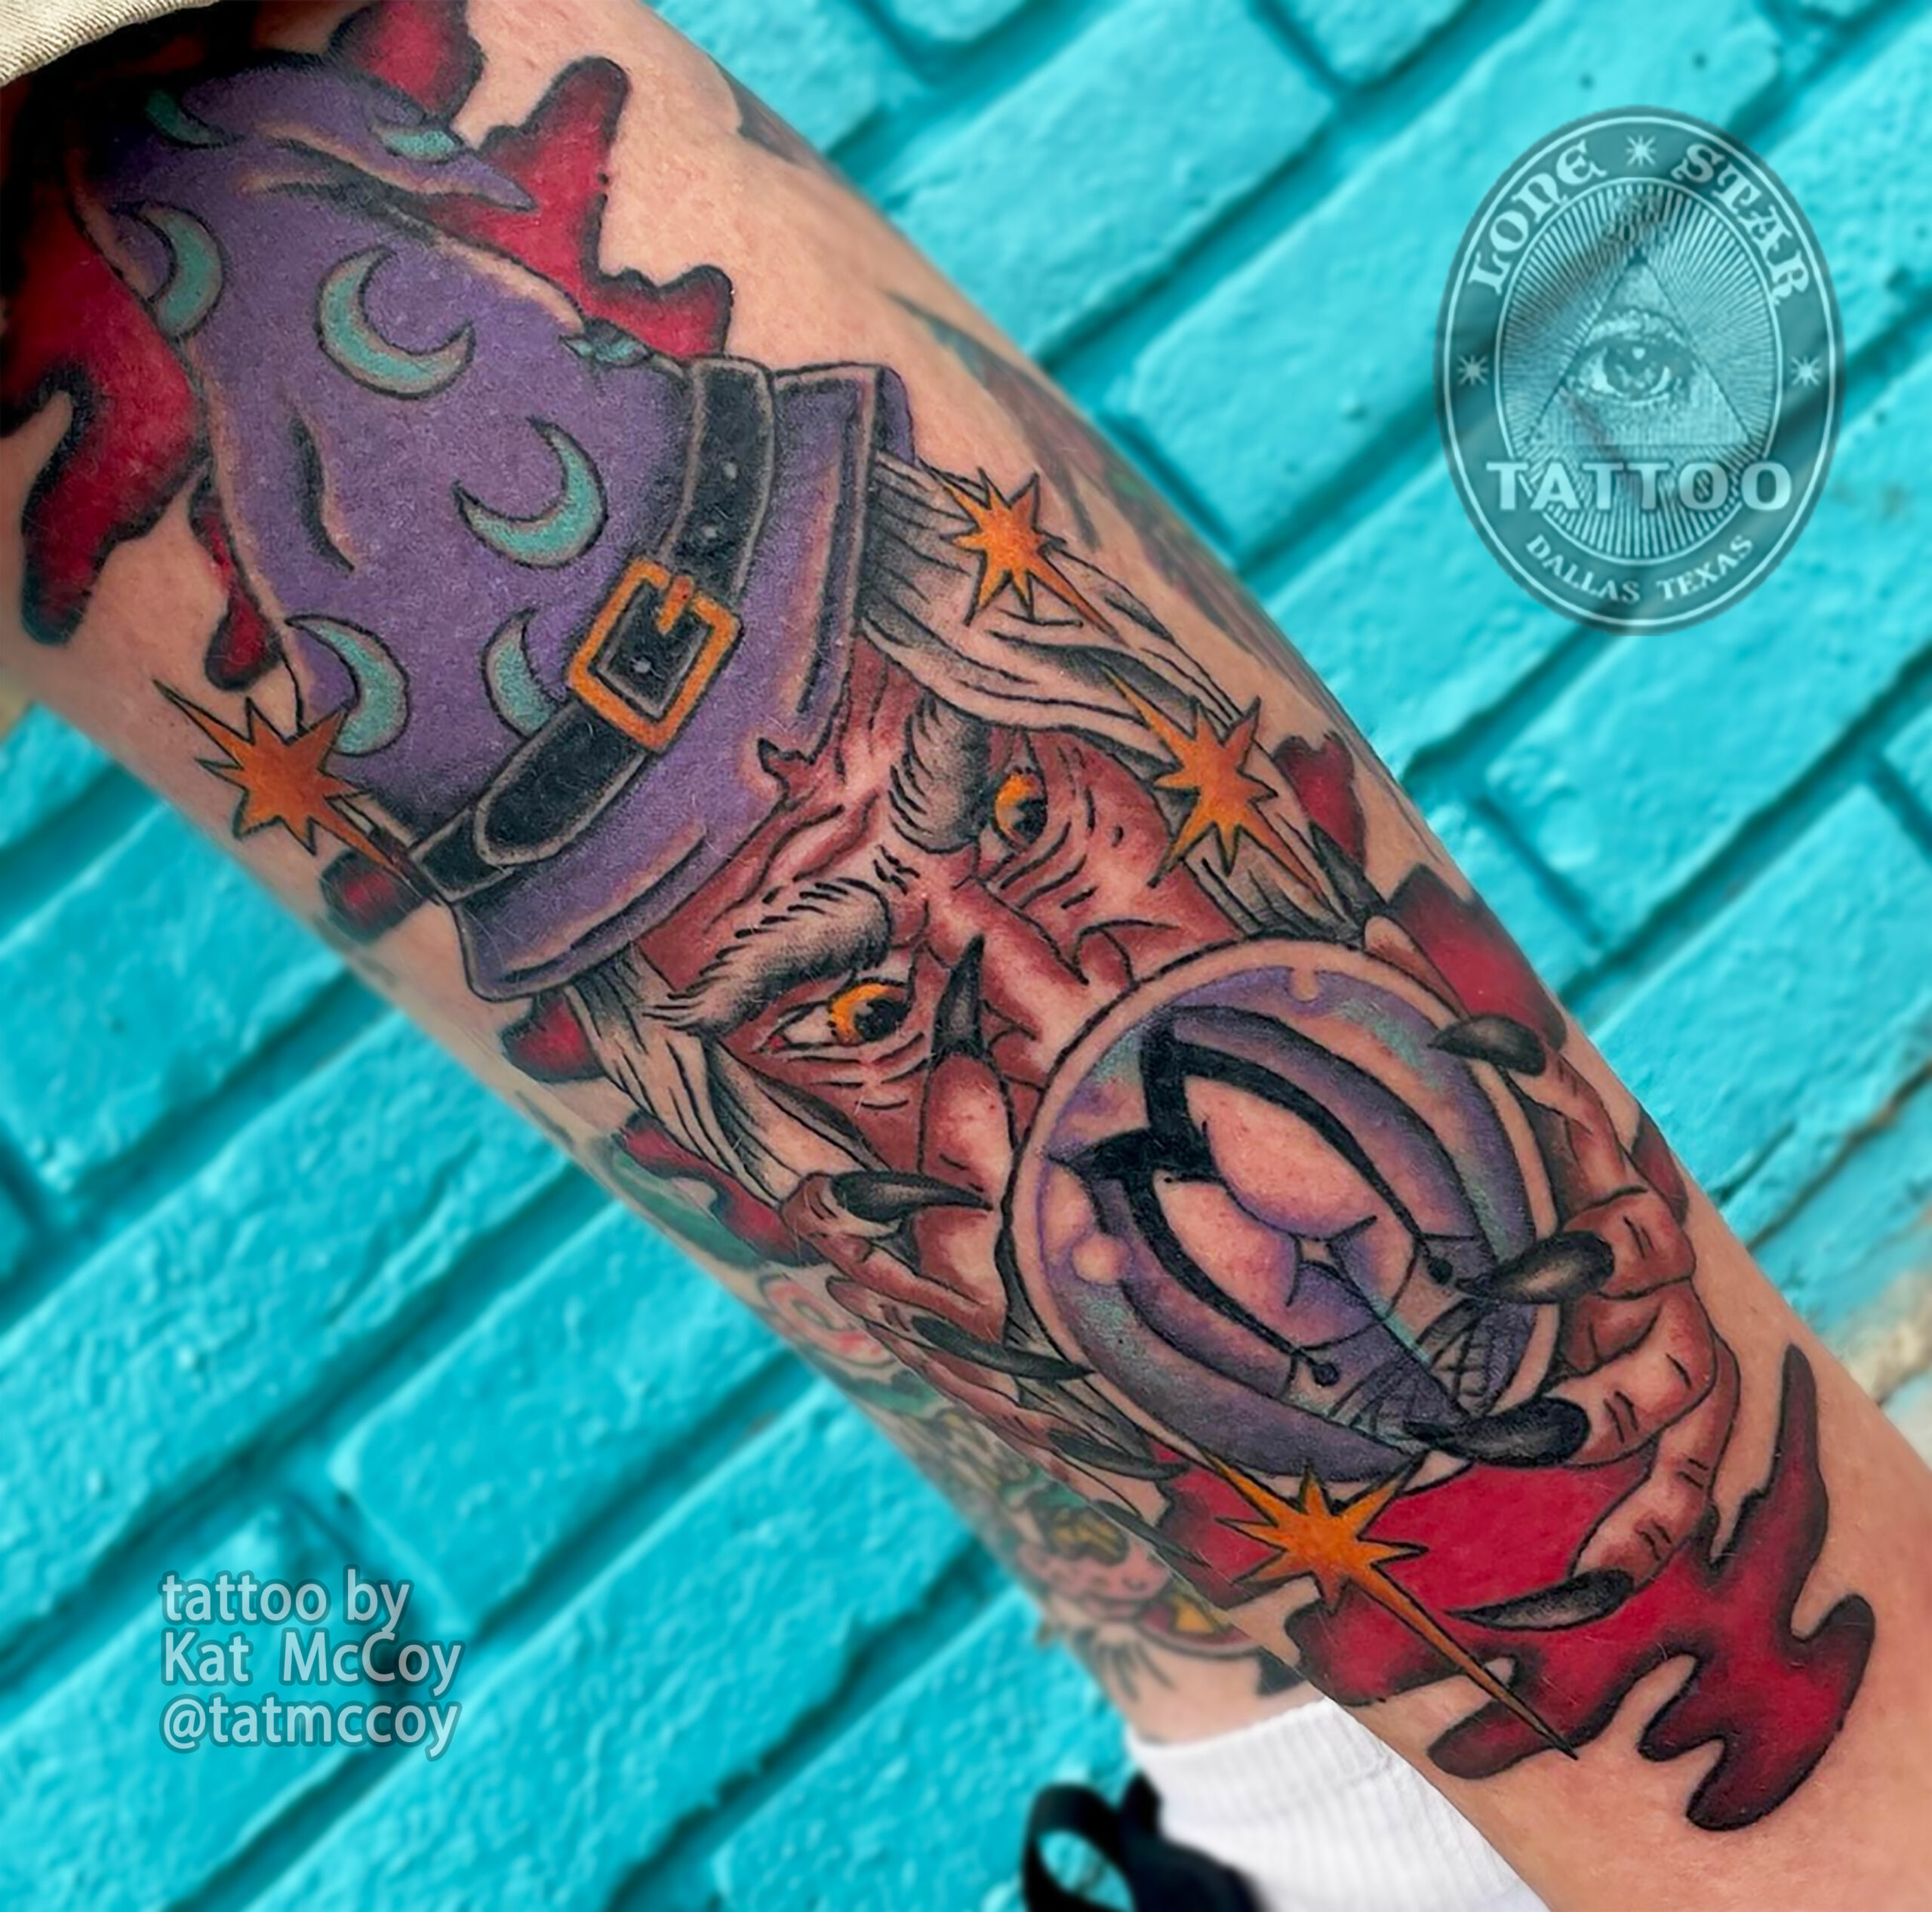 Tattoo Shop Dallas, TX - Tattoo Artists - Lone Star Tattoo